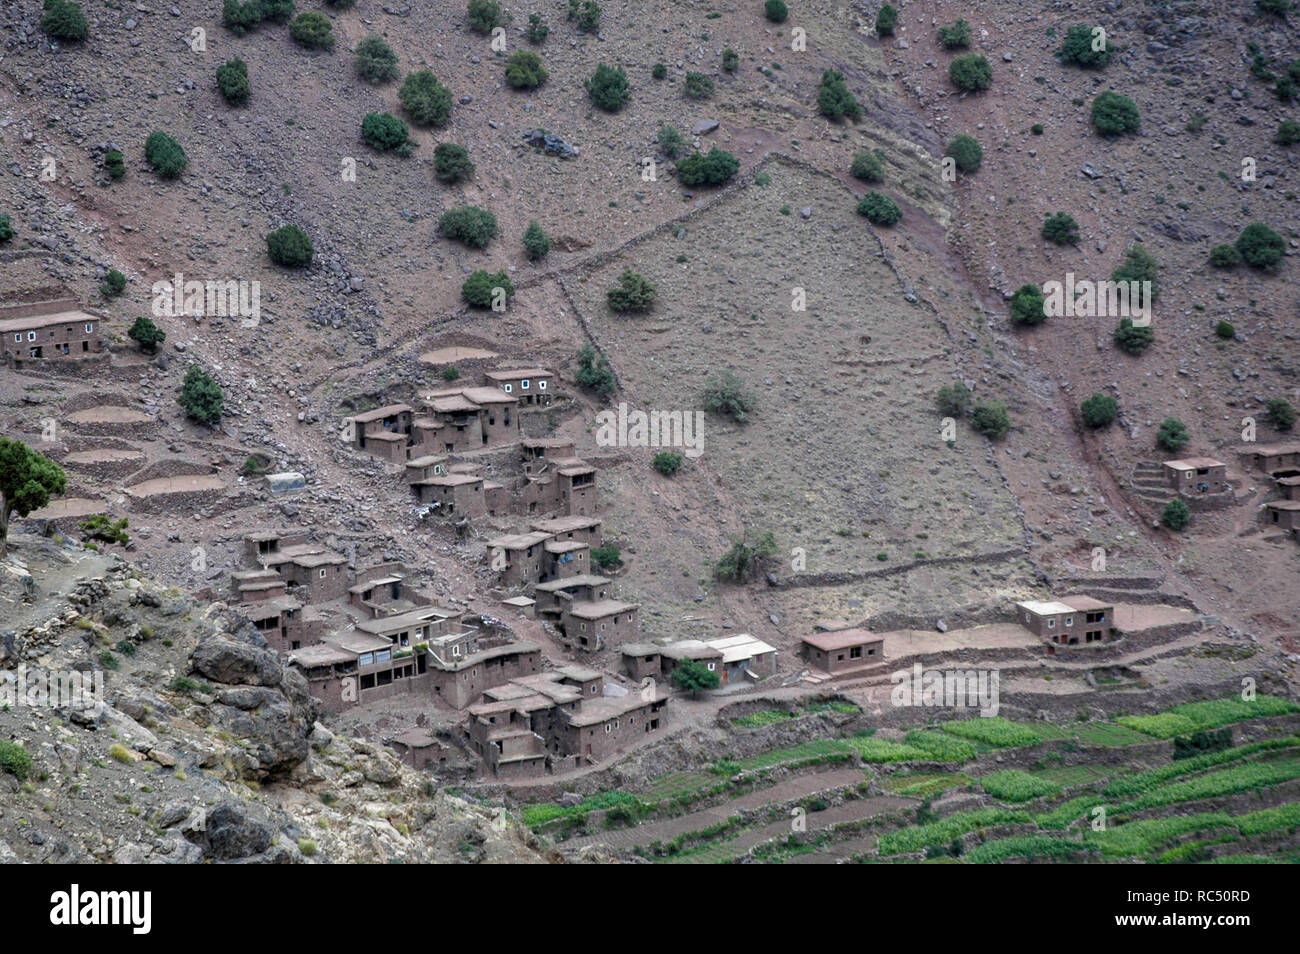 Villaggi in Alto Atlante in Maroc Foto Stock